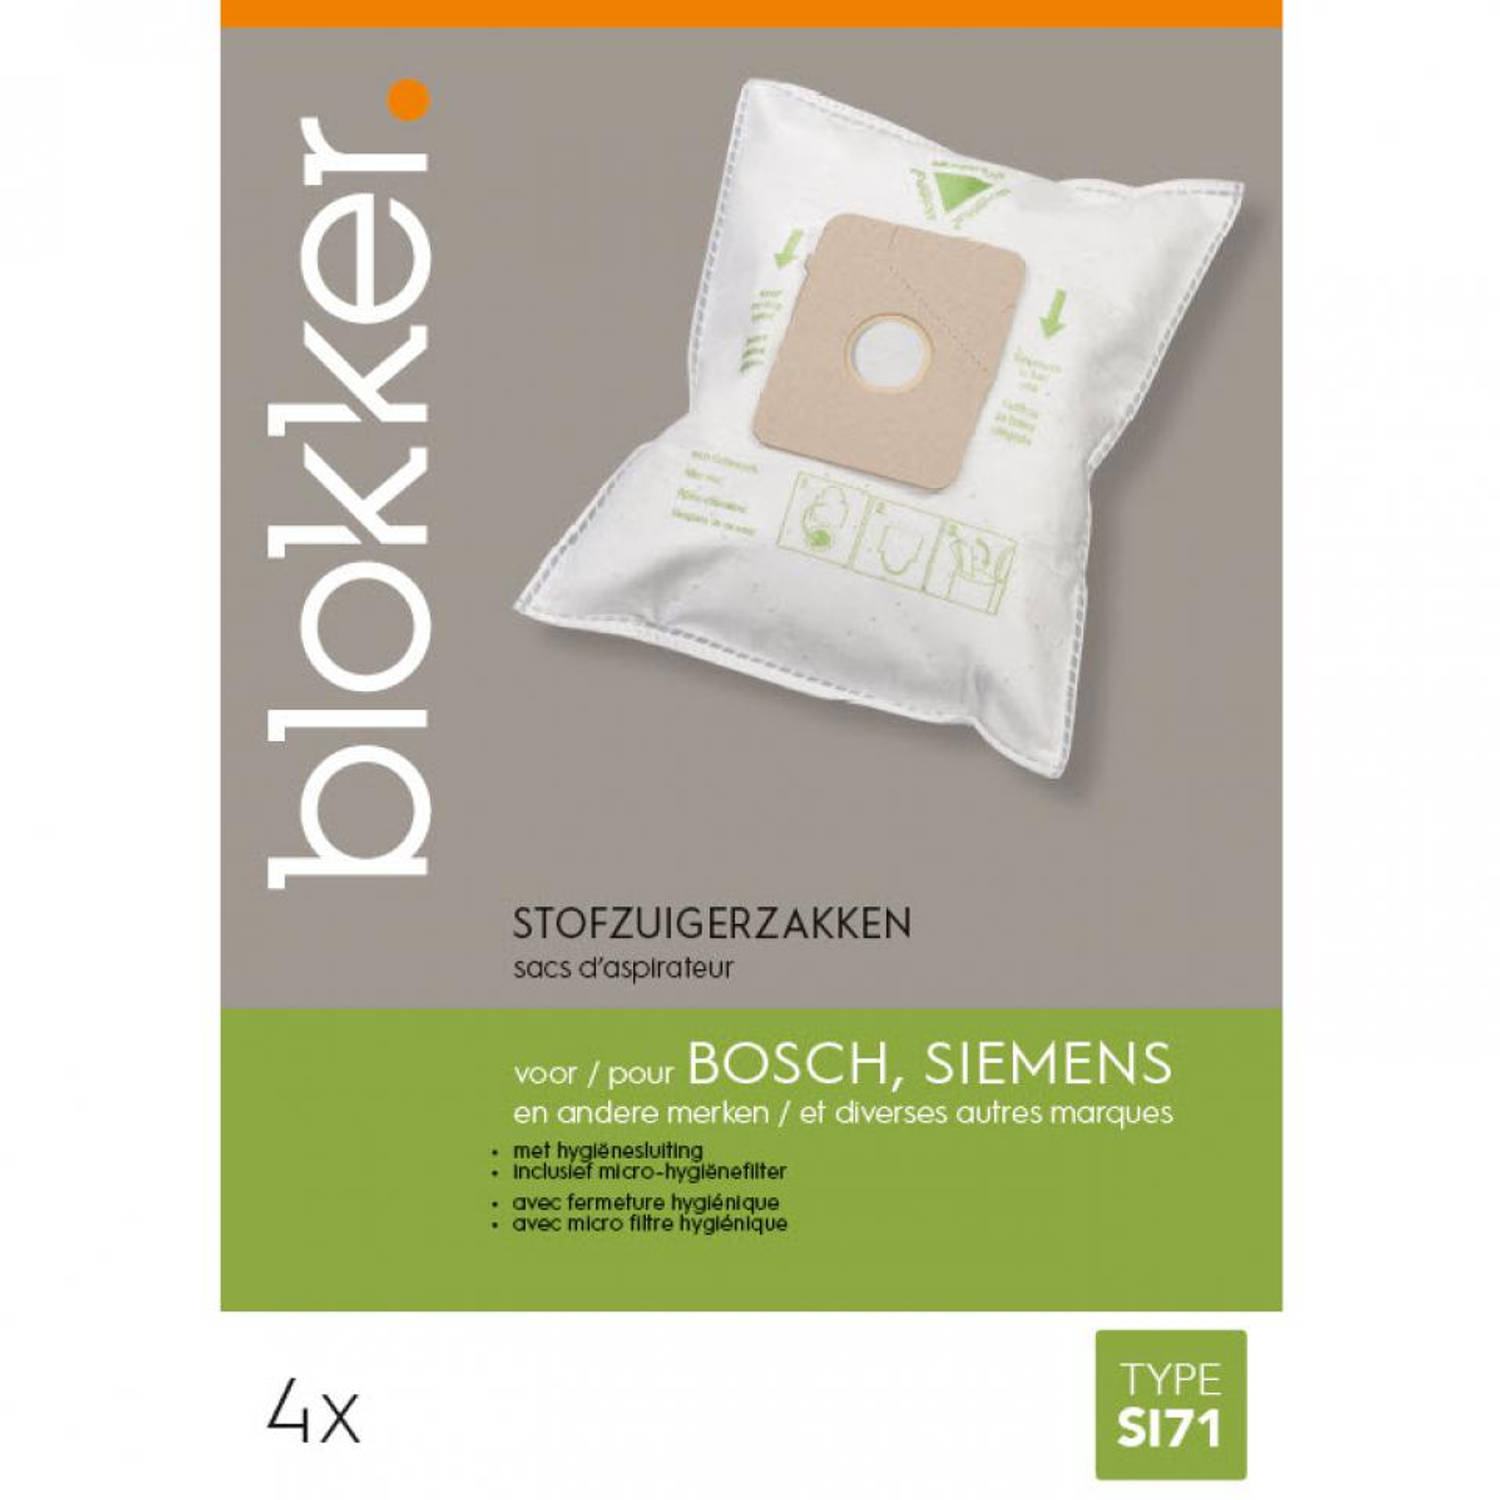 Niet ingewikkeld instant applaus Blokker stofzuigerzak Bosch, Siemens si71 - 4 stuks | Blokker